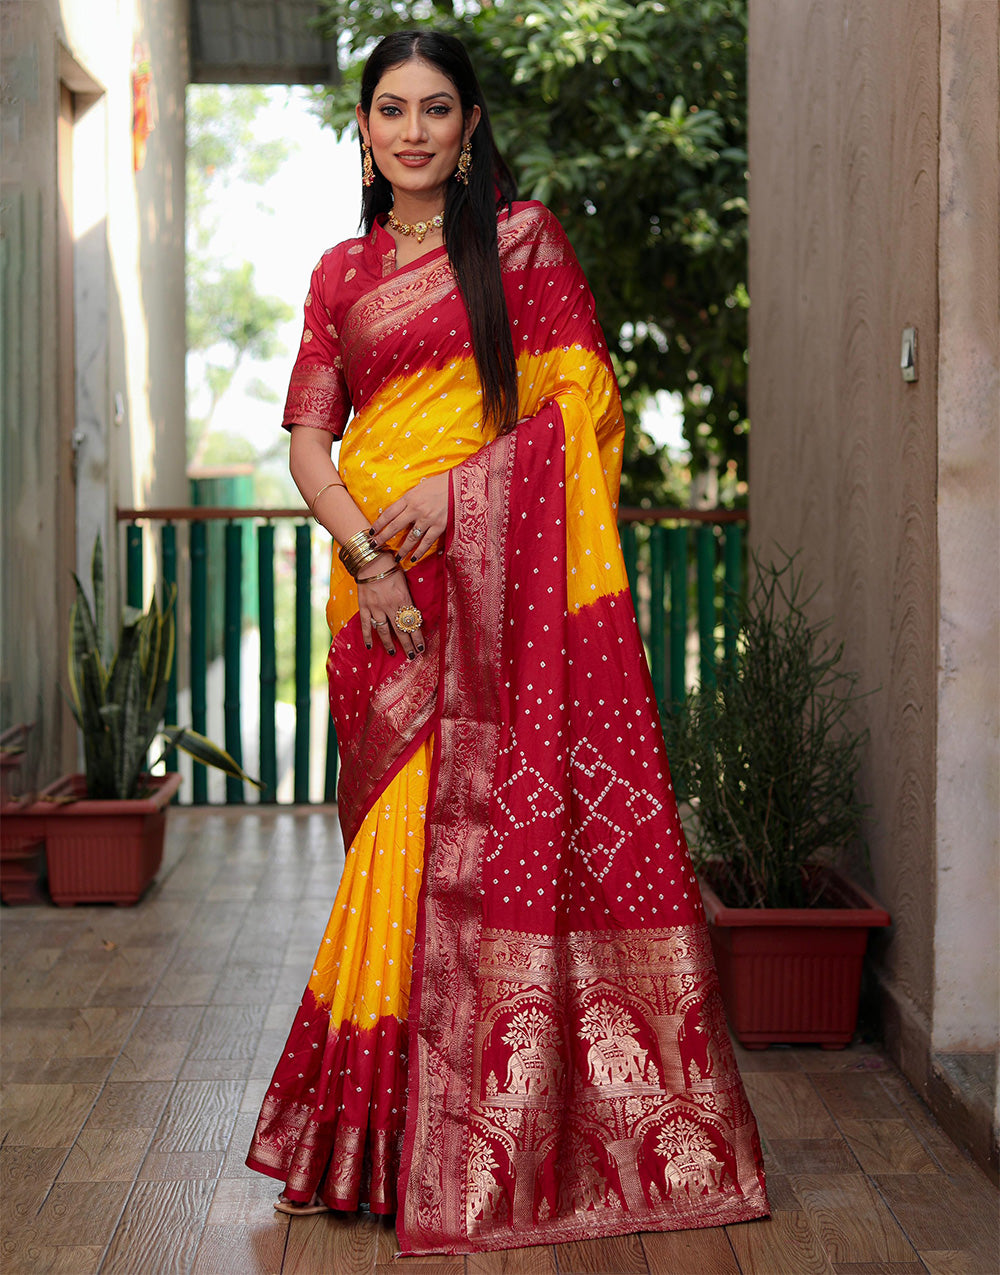 Red & Orange Hand Bandhej Bandhani Saree With Weaving Work